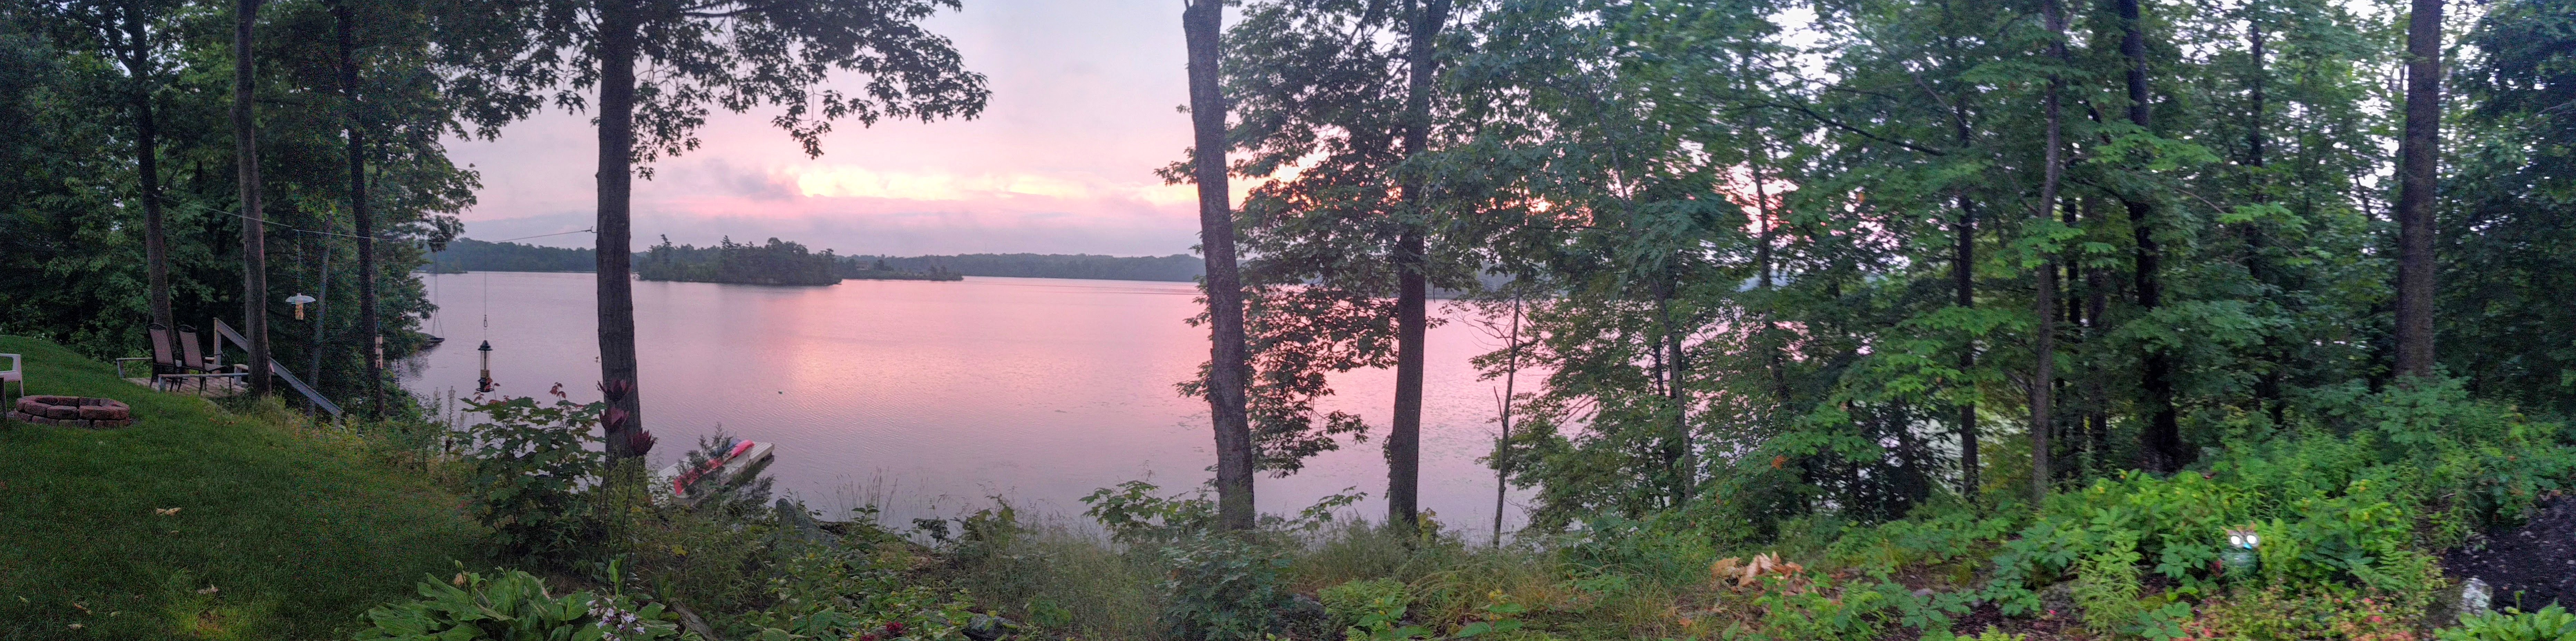 Sunrise on Cranberry Lake